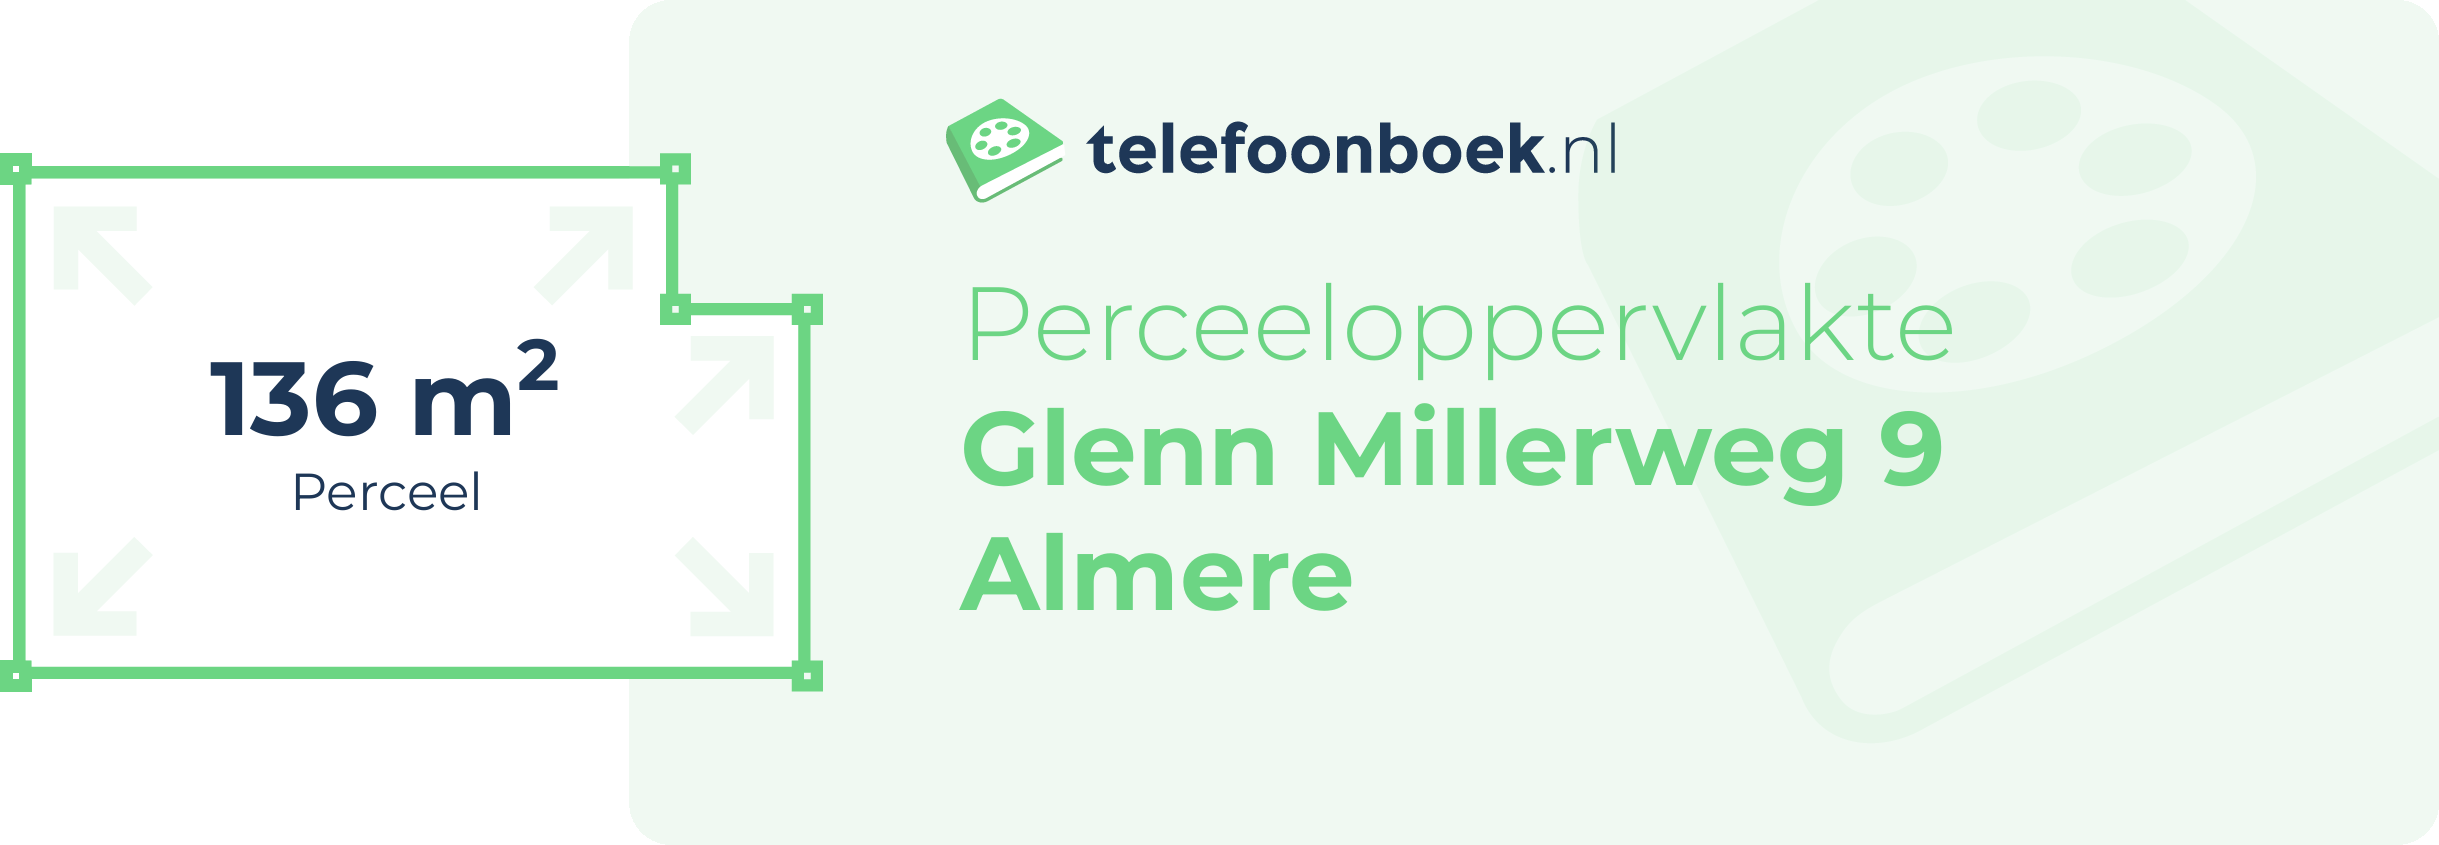 Perceeloppervlakte Glenn Millerweg 9 Almere